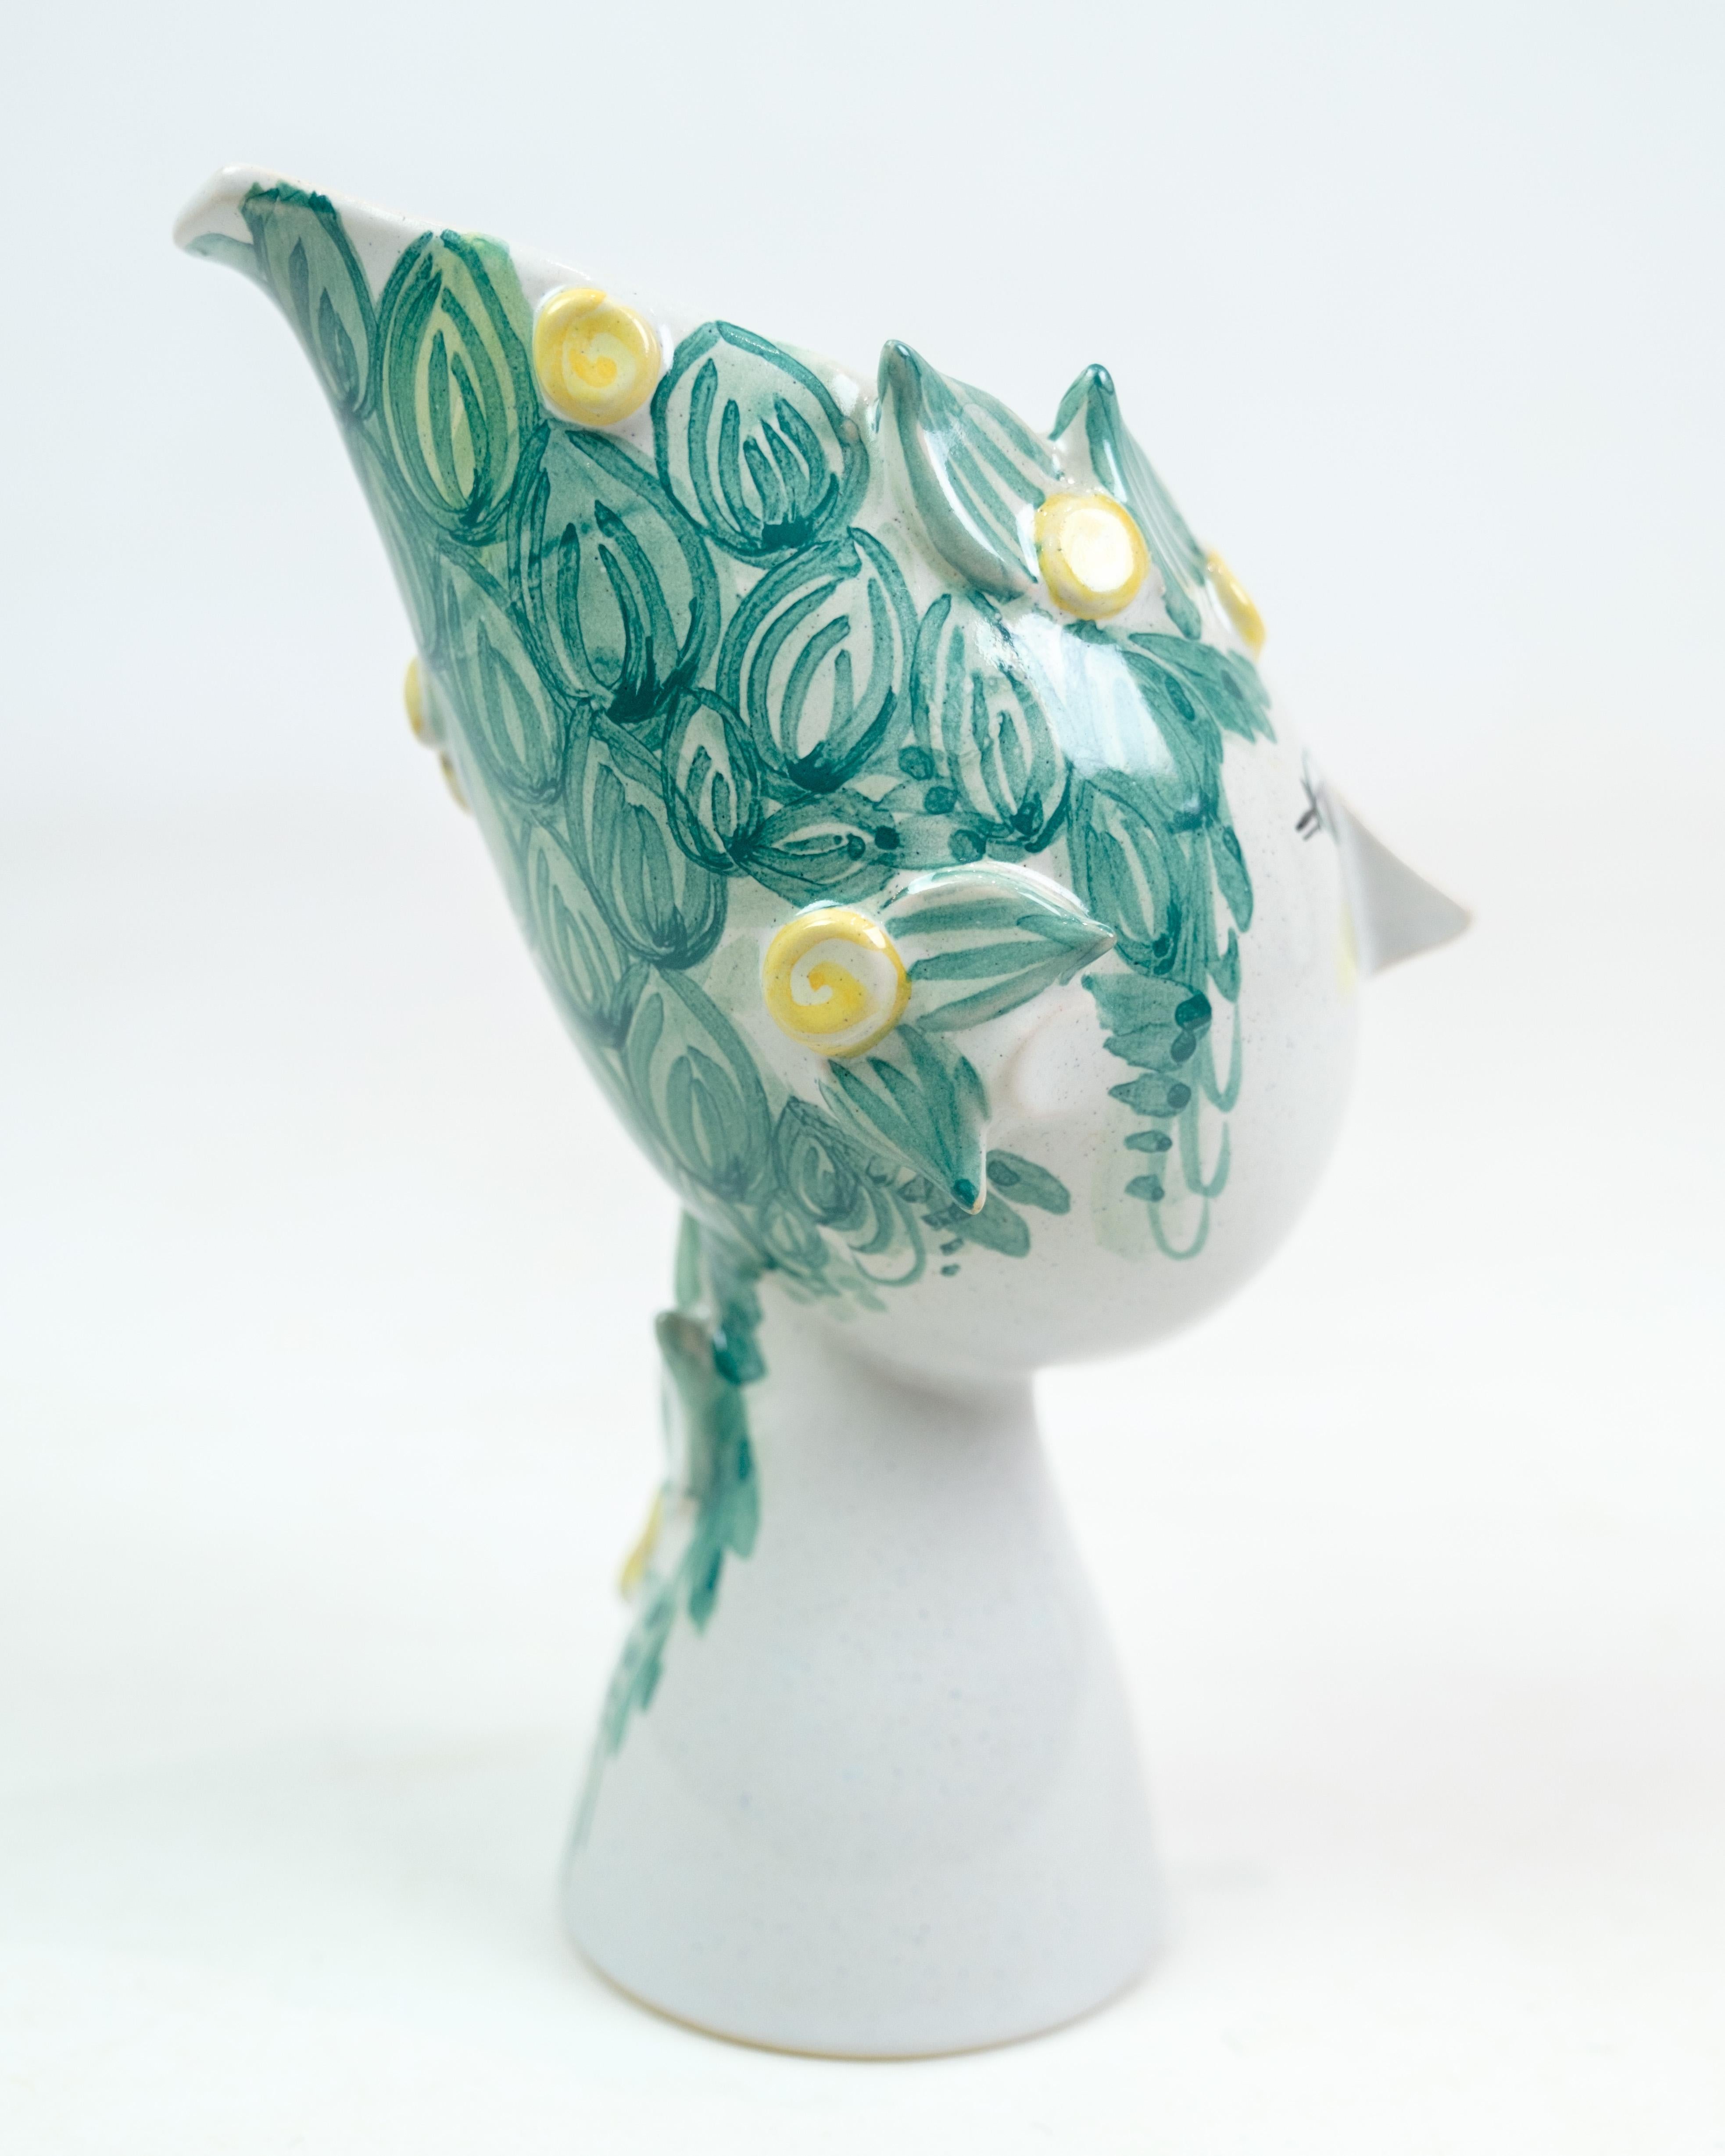 Keramikvase, entworfen von Bjørn Wiinblad, mit der Designnummer. V18 von 1975, hergestellt in Dänemark. Diese Vase repräsentiert Wiinblads unverwechselbaren Stil, der oft fantasievolle und farbenfrohe Muster beinhaltet.

 Diese Vase mit dem Einfluss